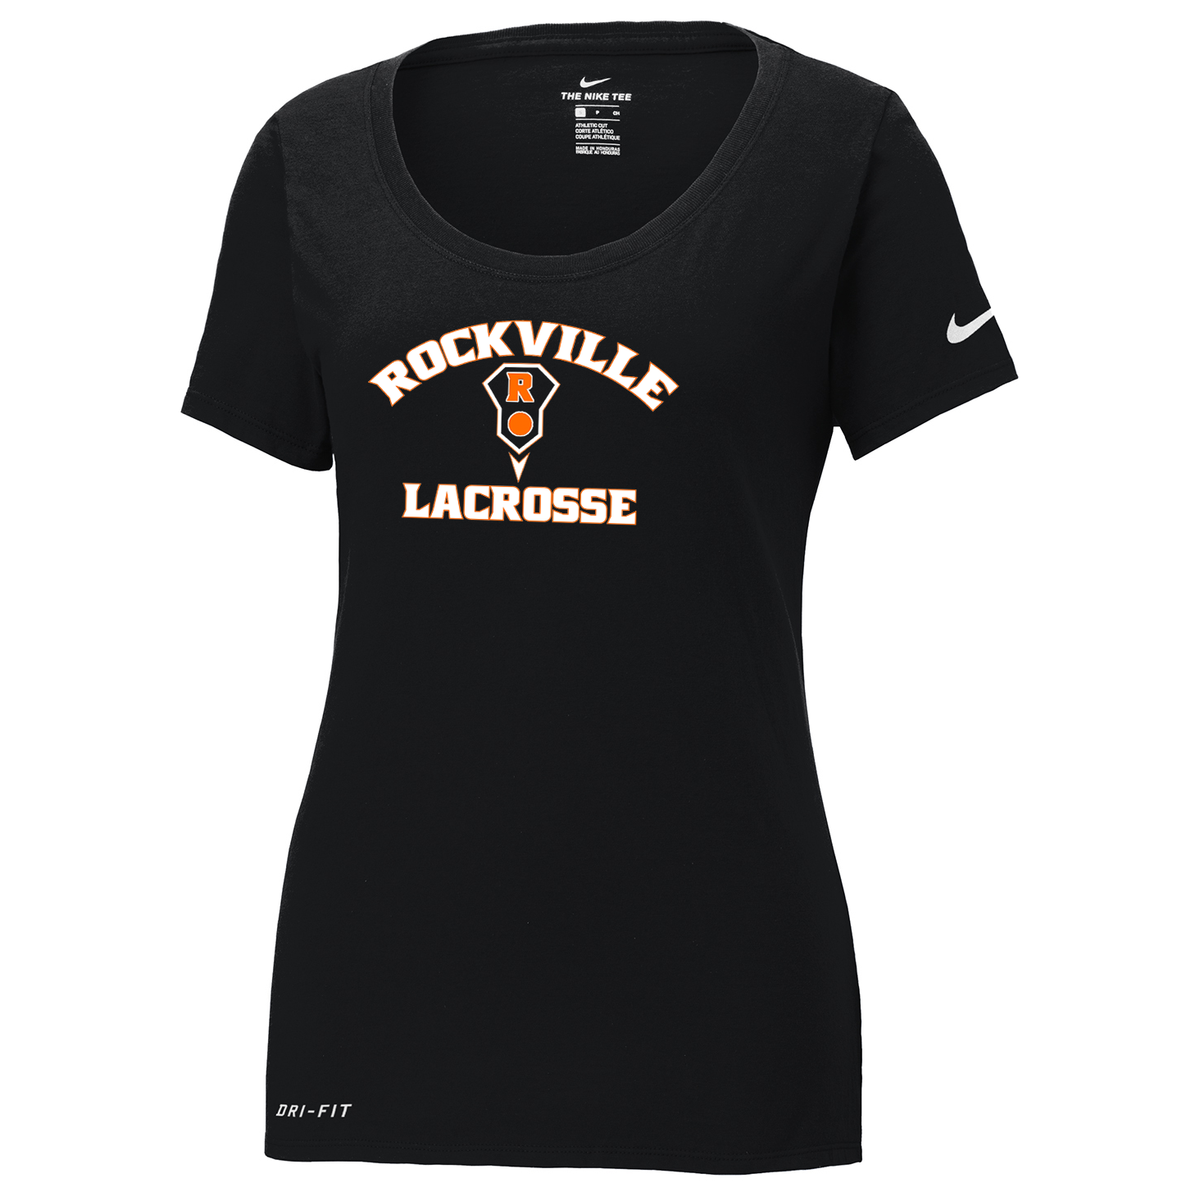 Rockville HS Girls Lacrosse Nike Ladies Dri-FIT Tee